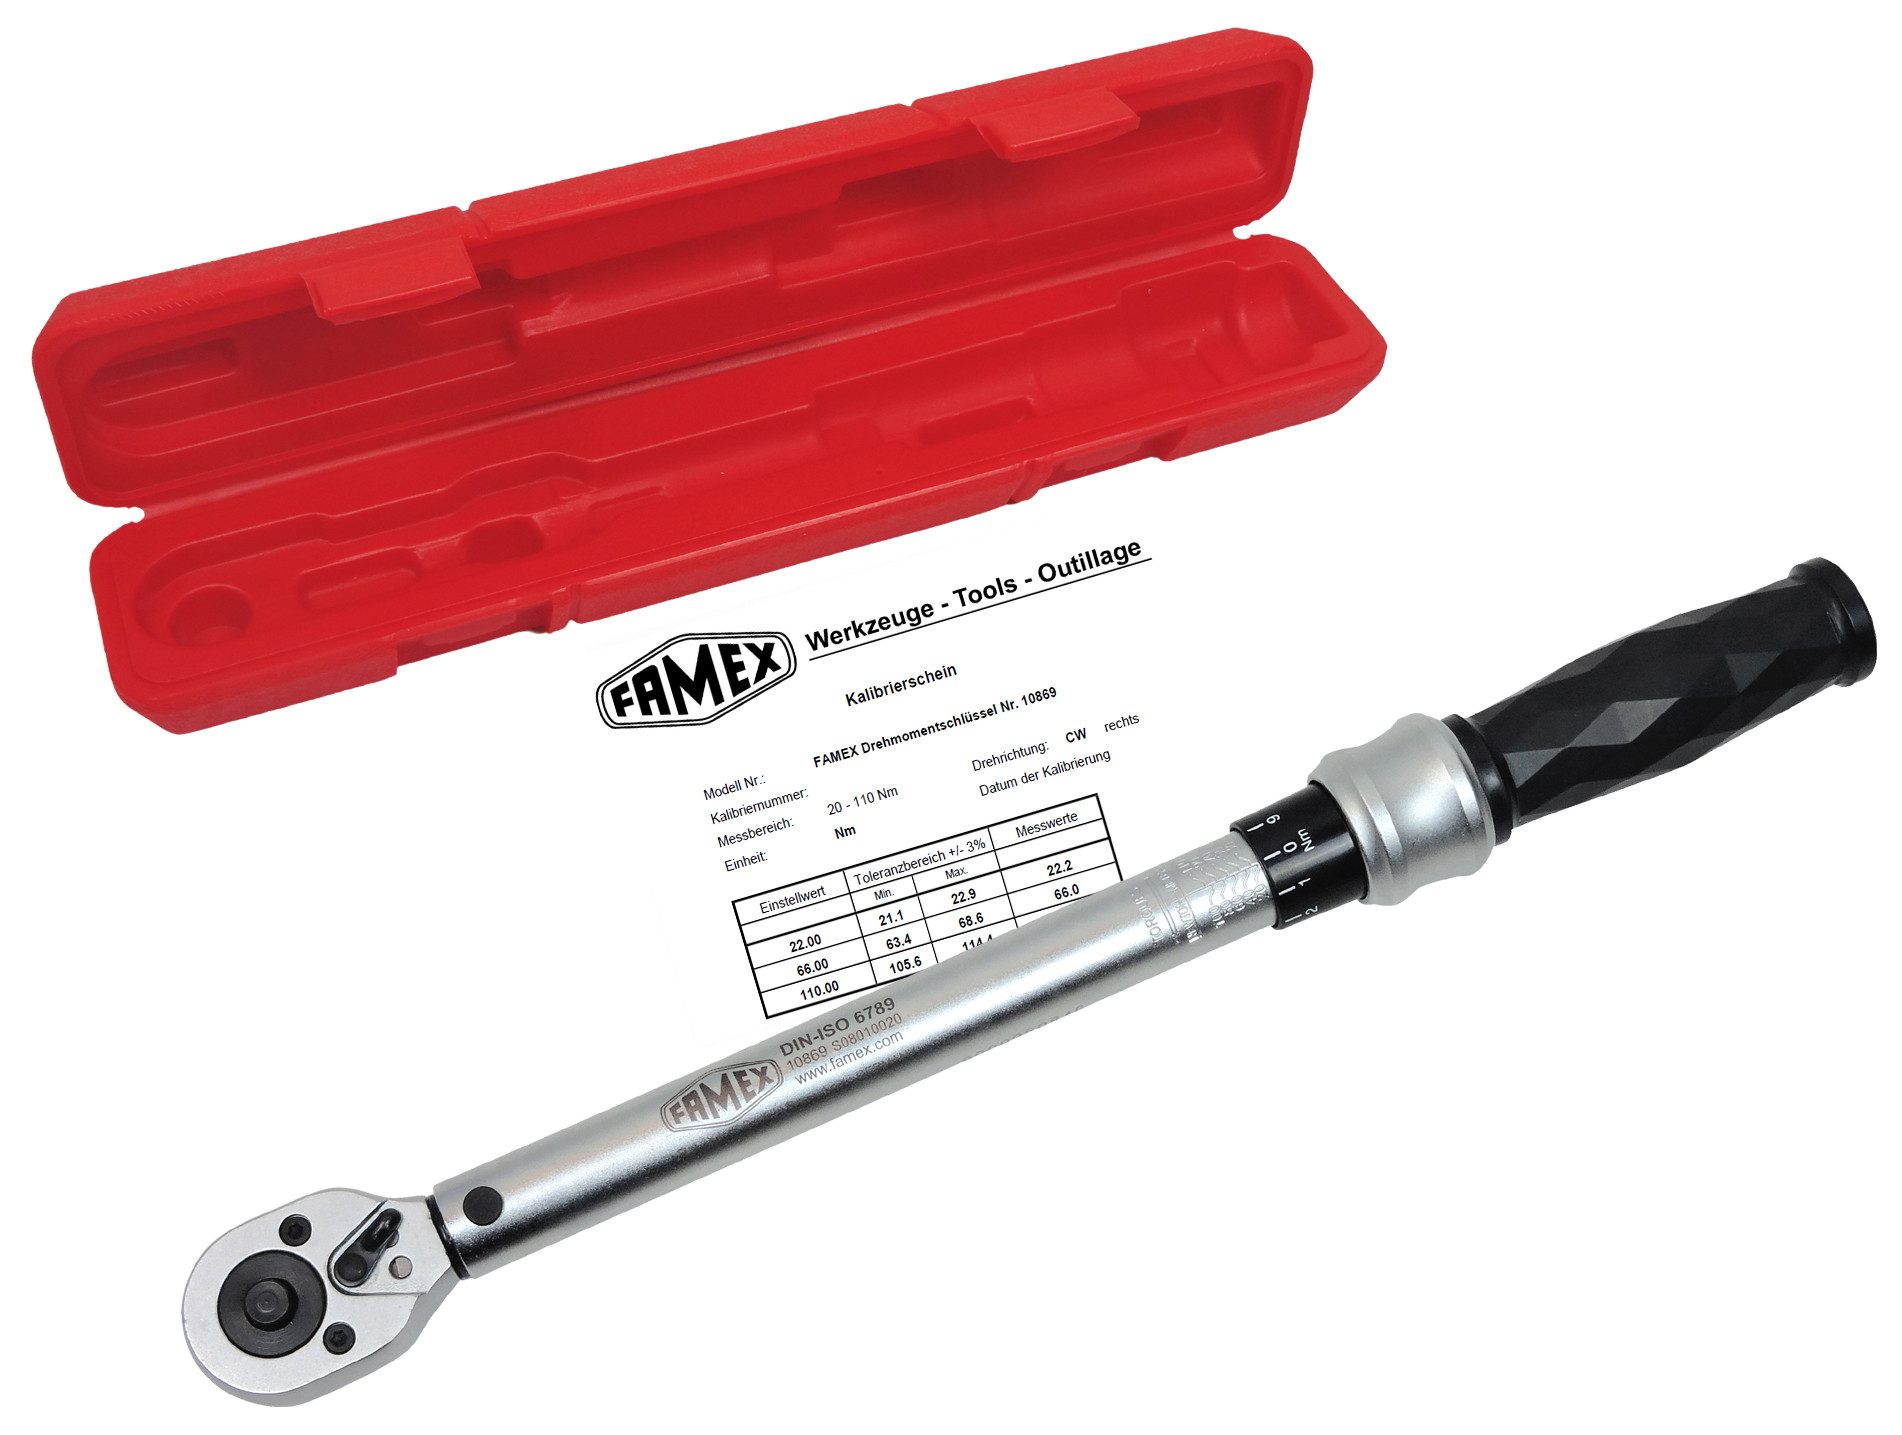 FAMEX Drehmomentschlüssel 10869 - PROFESSIONAL - R+L, 10 mm (3/8-Zoll)-Antrieb, 20-110 Nm, Messung in beide Drehrichtungen